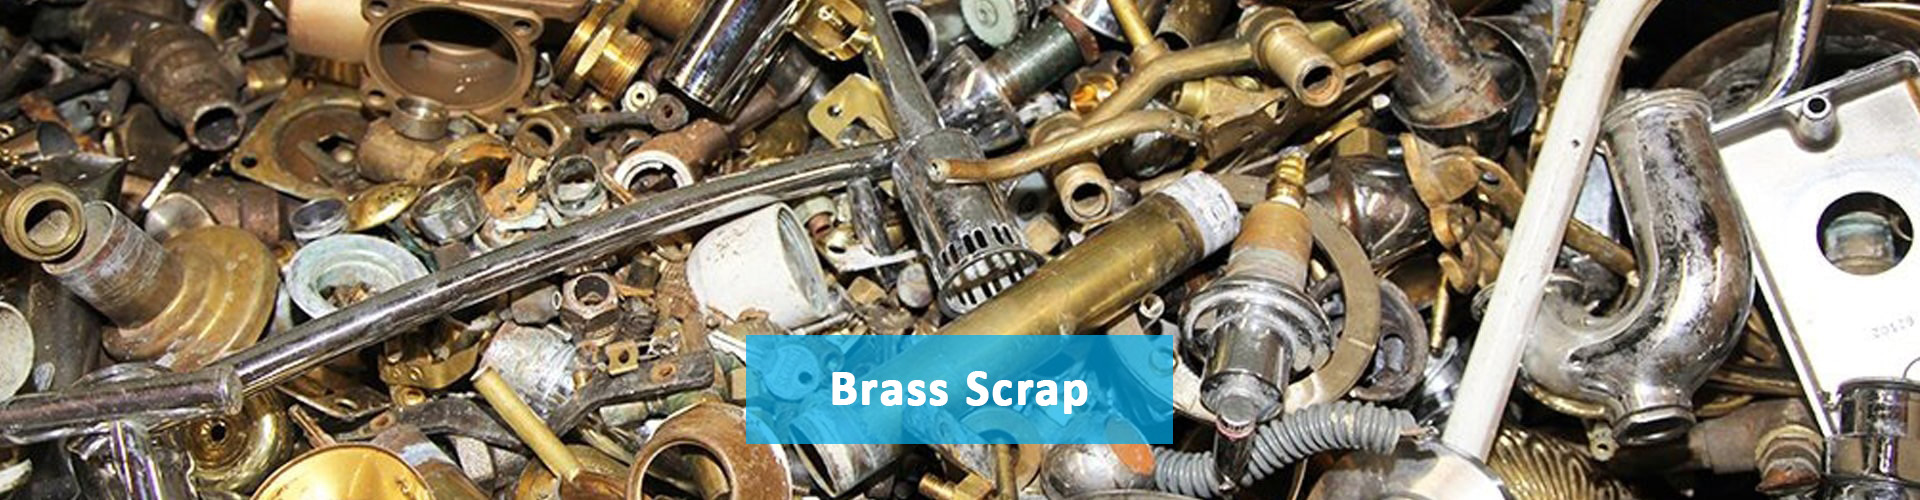 Brass Scrap